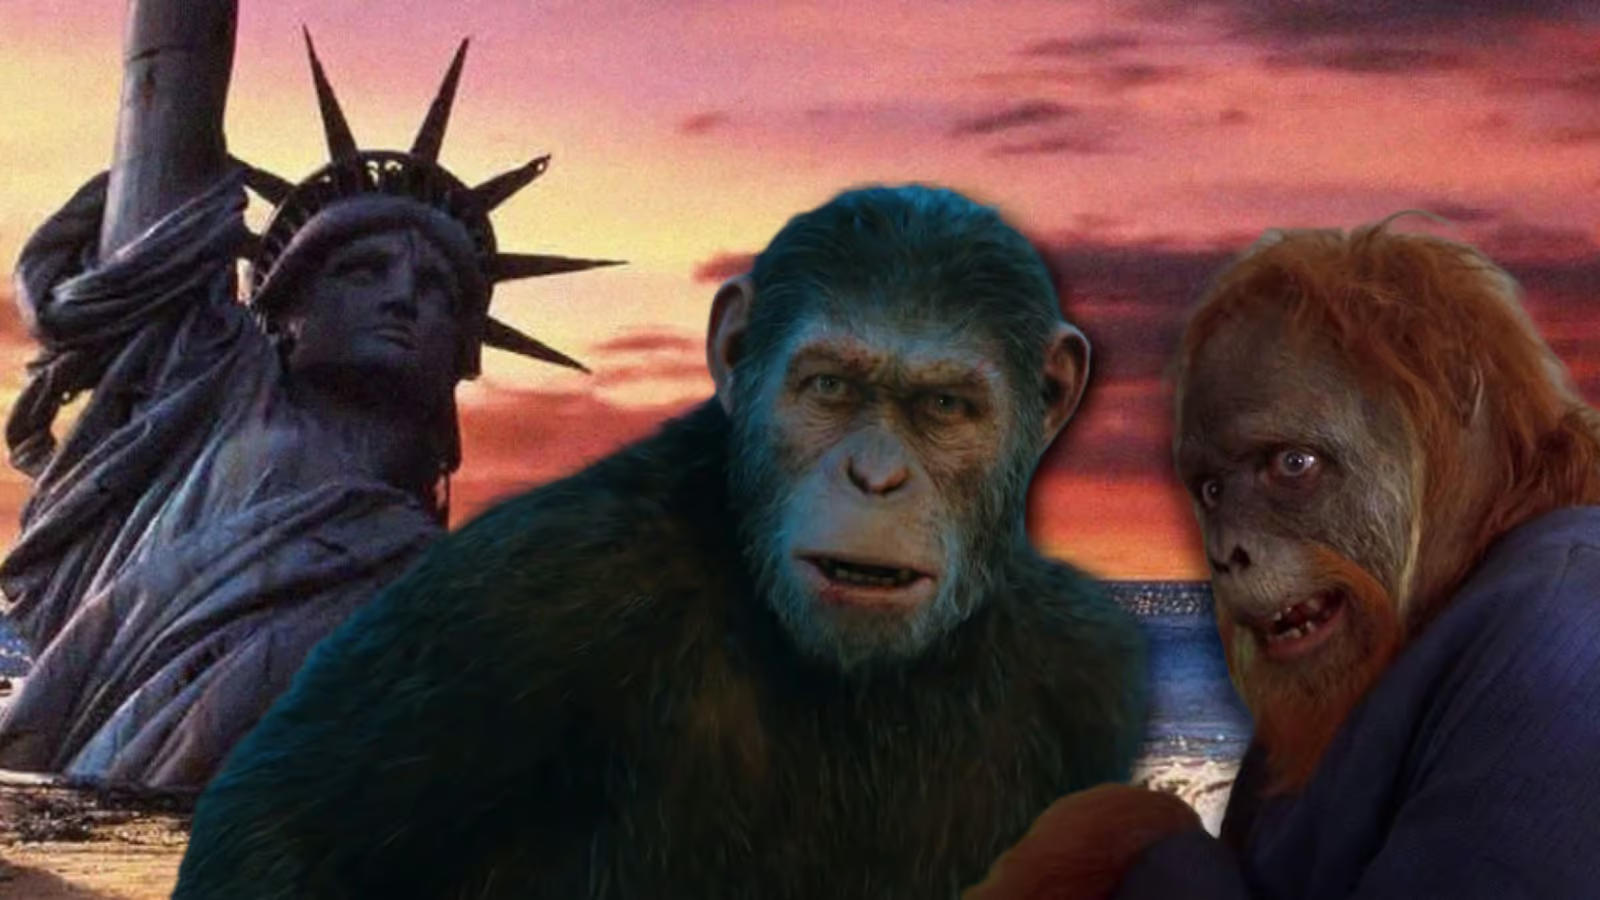 Kingdom Of The Planet Of The Apes: फिल्म का नया ट्रेलर जारी, वानरों की अत्याचारी दुनियां में फंसीं फ्रेया एलन